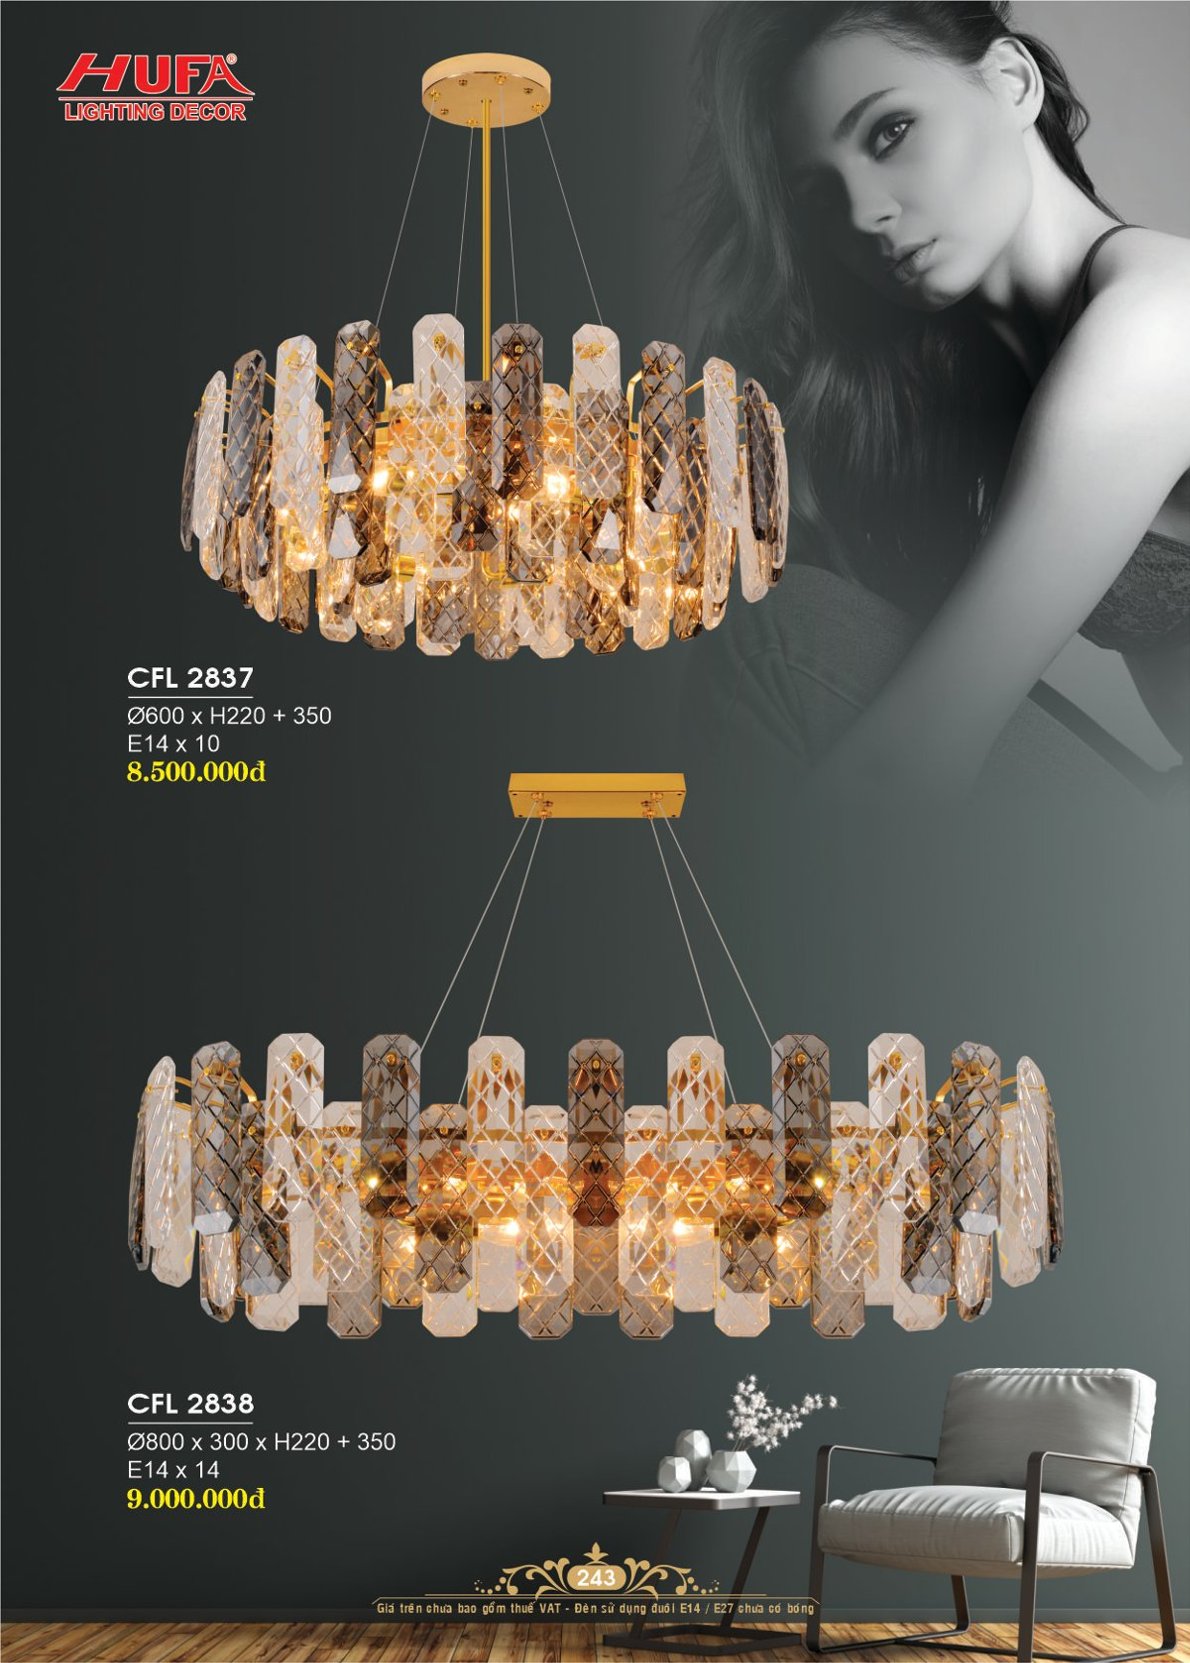 Đèn chùm pha lê, đèn trang trí Hufa CFL 1971 cao cấp giá rẻ bảo hành lâu dài, hỗ trợ lắp đặt, giao hàng toàn quốc. Đèn pha lê Hufa được bảo trì trọn đời